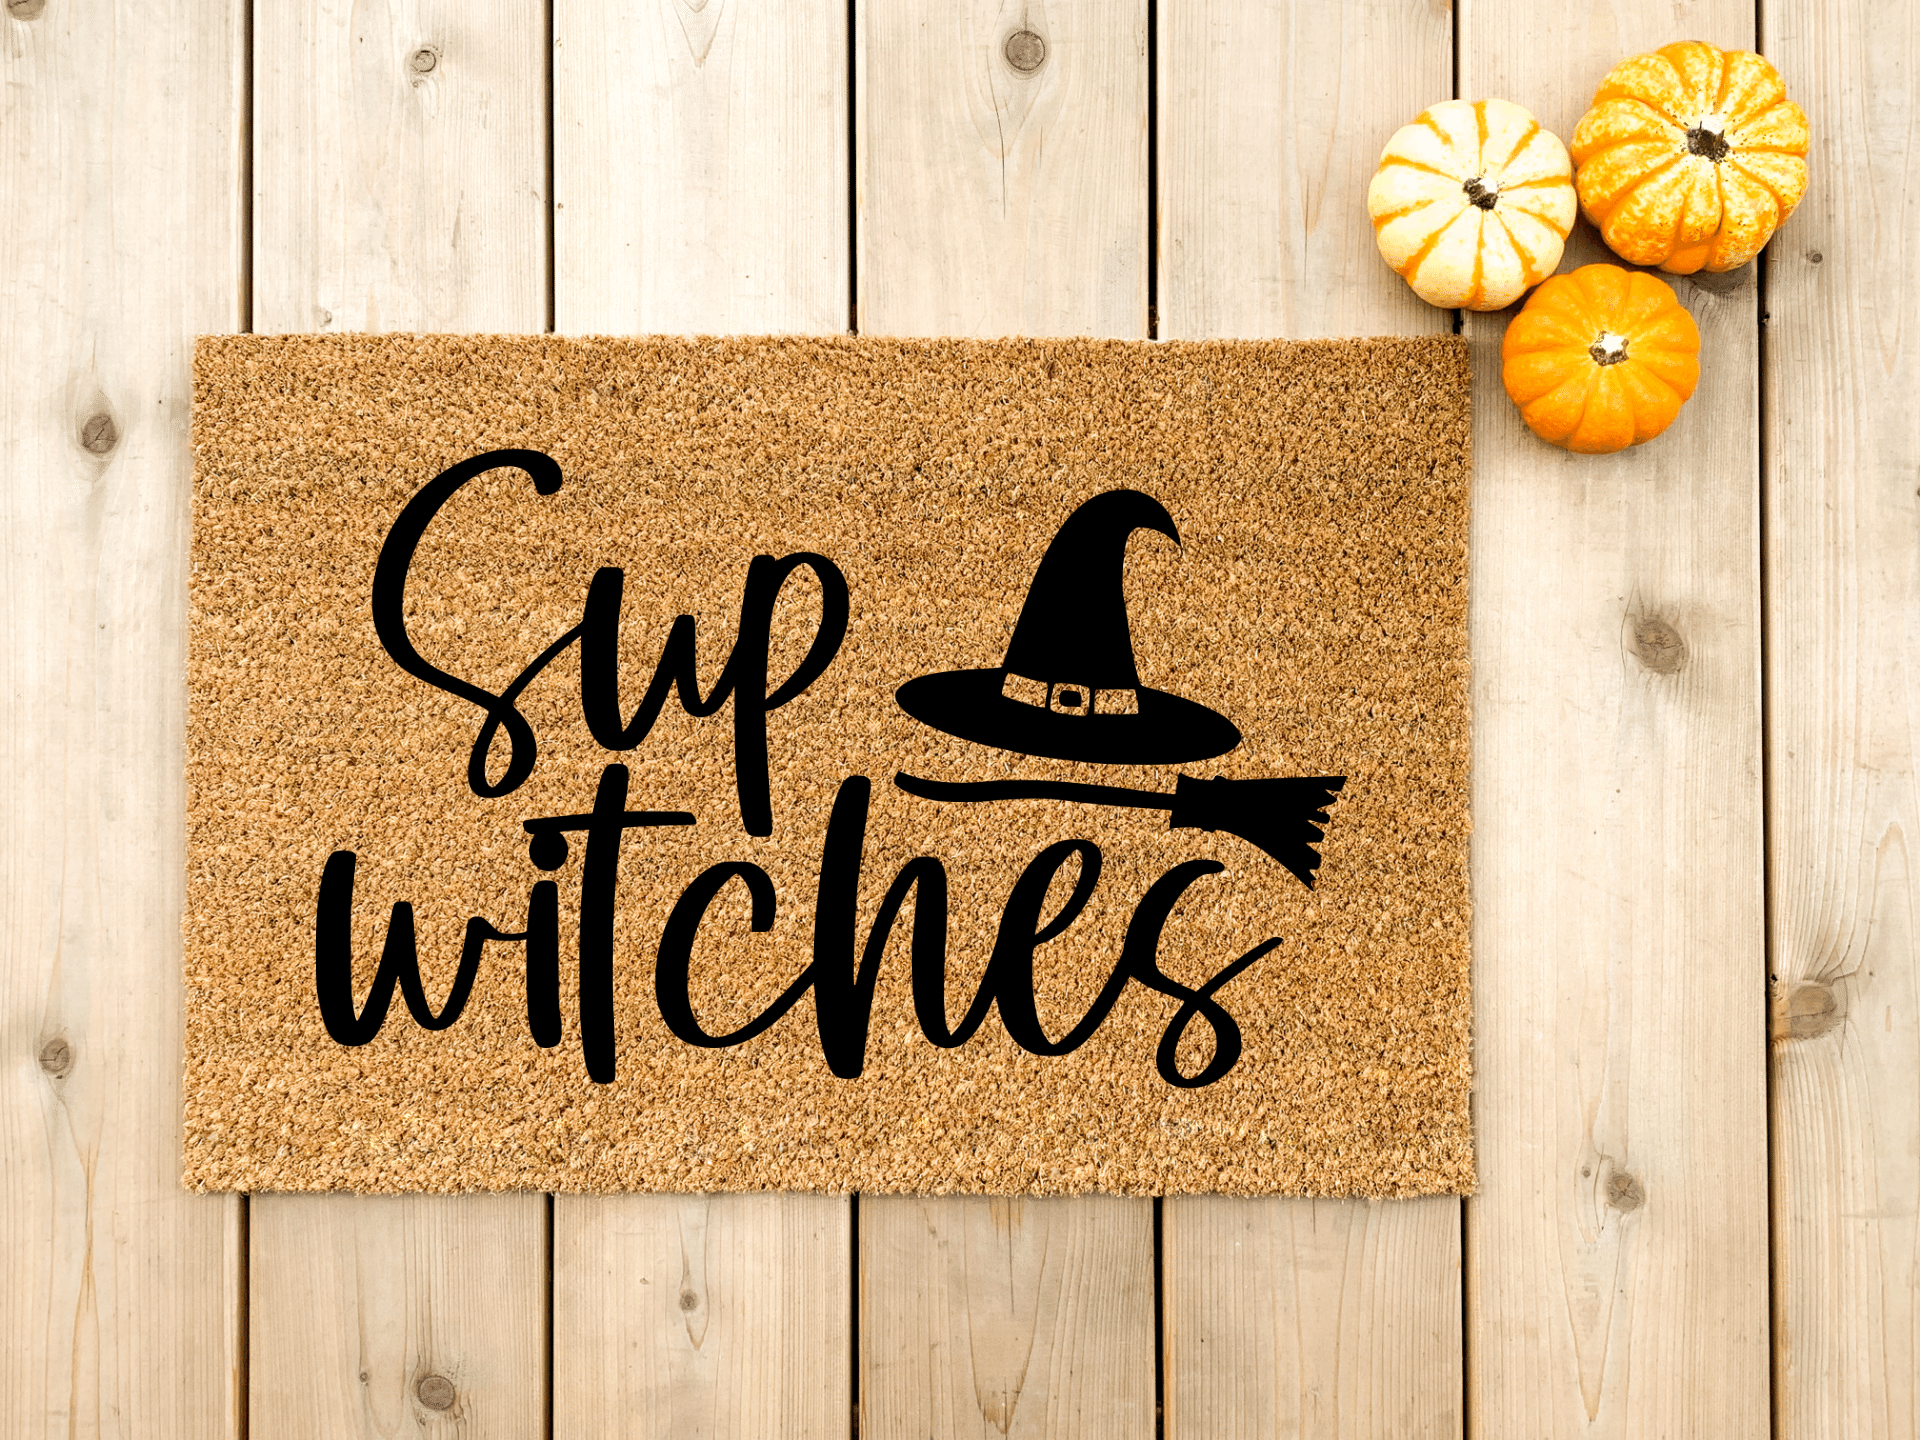 Sup Witches Halloween doormat - Personalised Doormat Australia